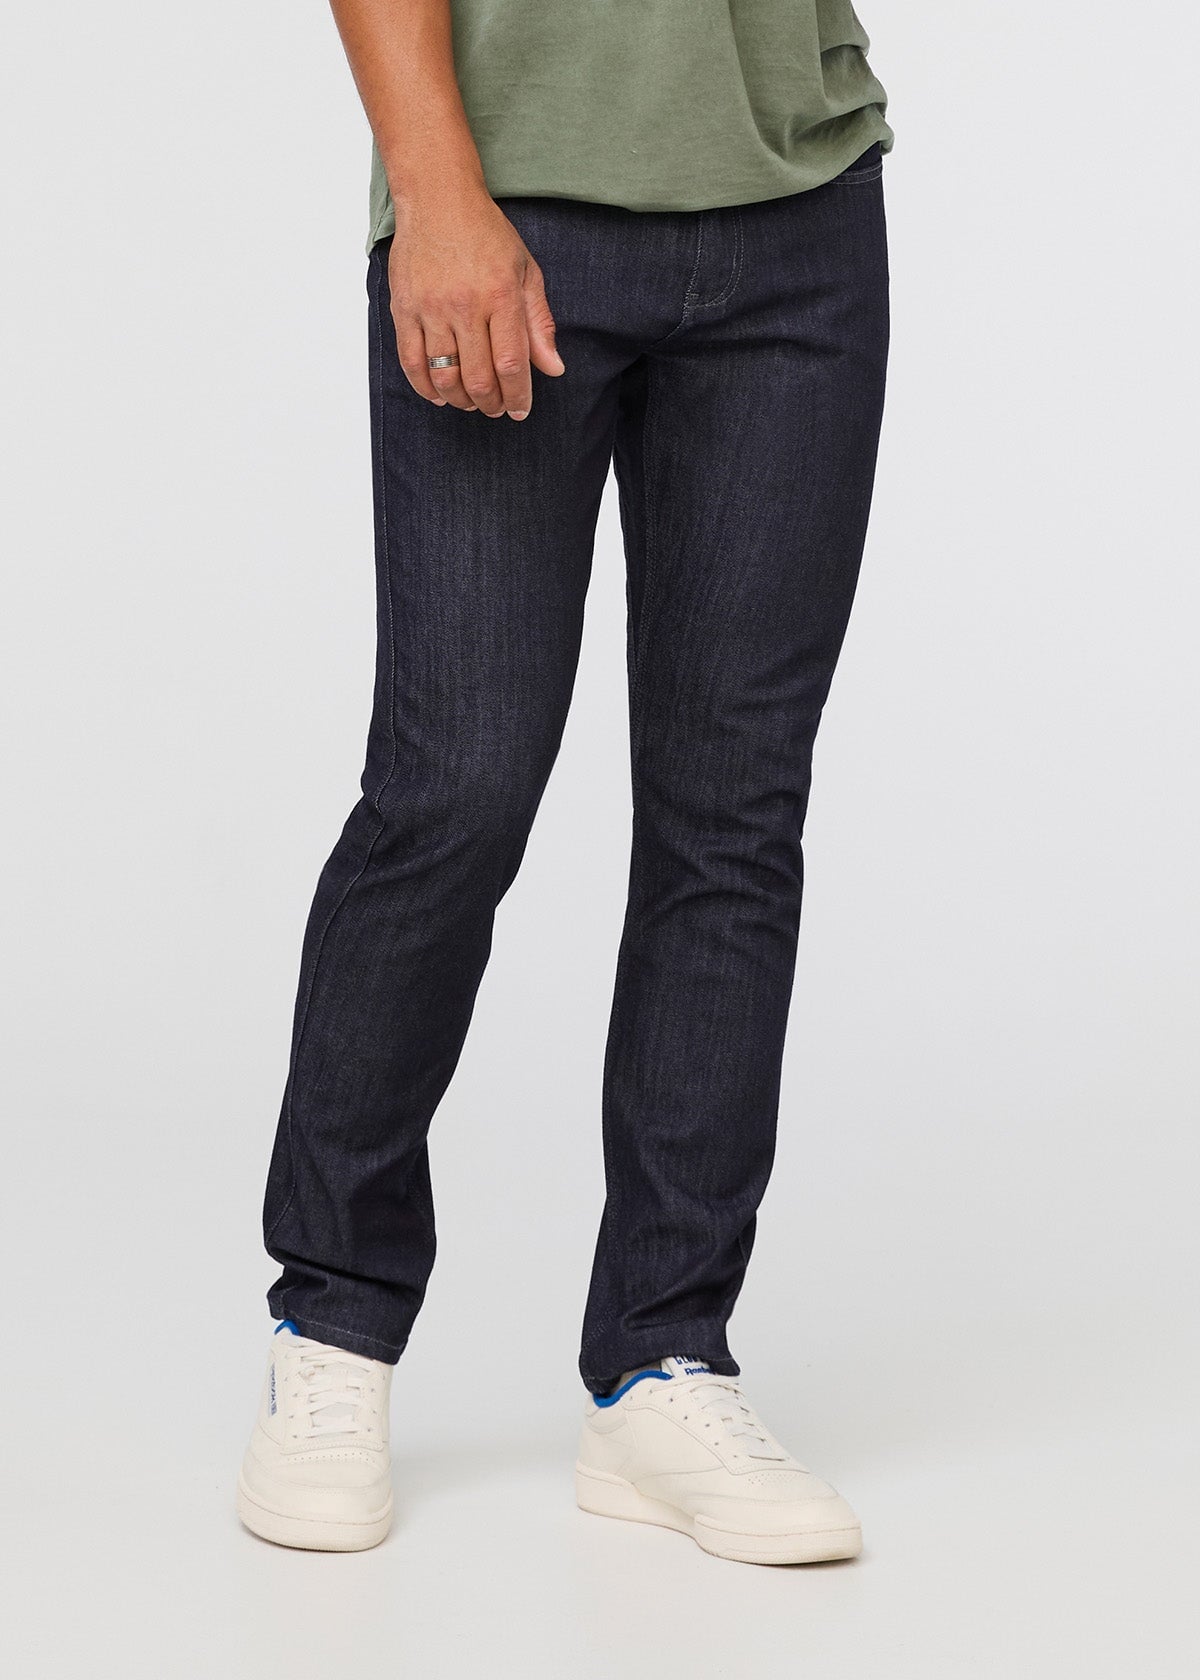 DU/ER L2X Performance Denim Slim Fit Men's Jeans, Rinse (34L x 28W) at  Amazon Men's Clothing store